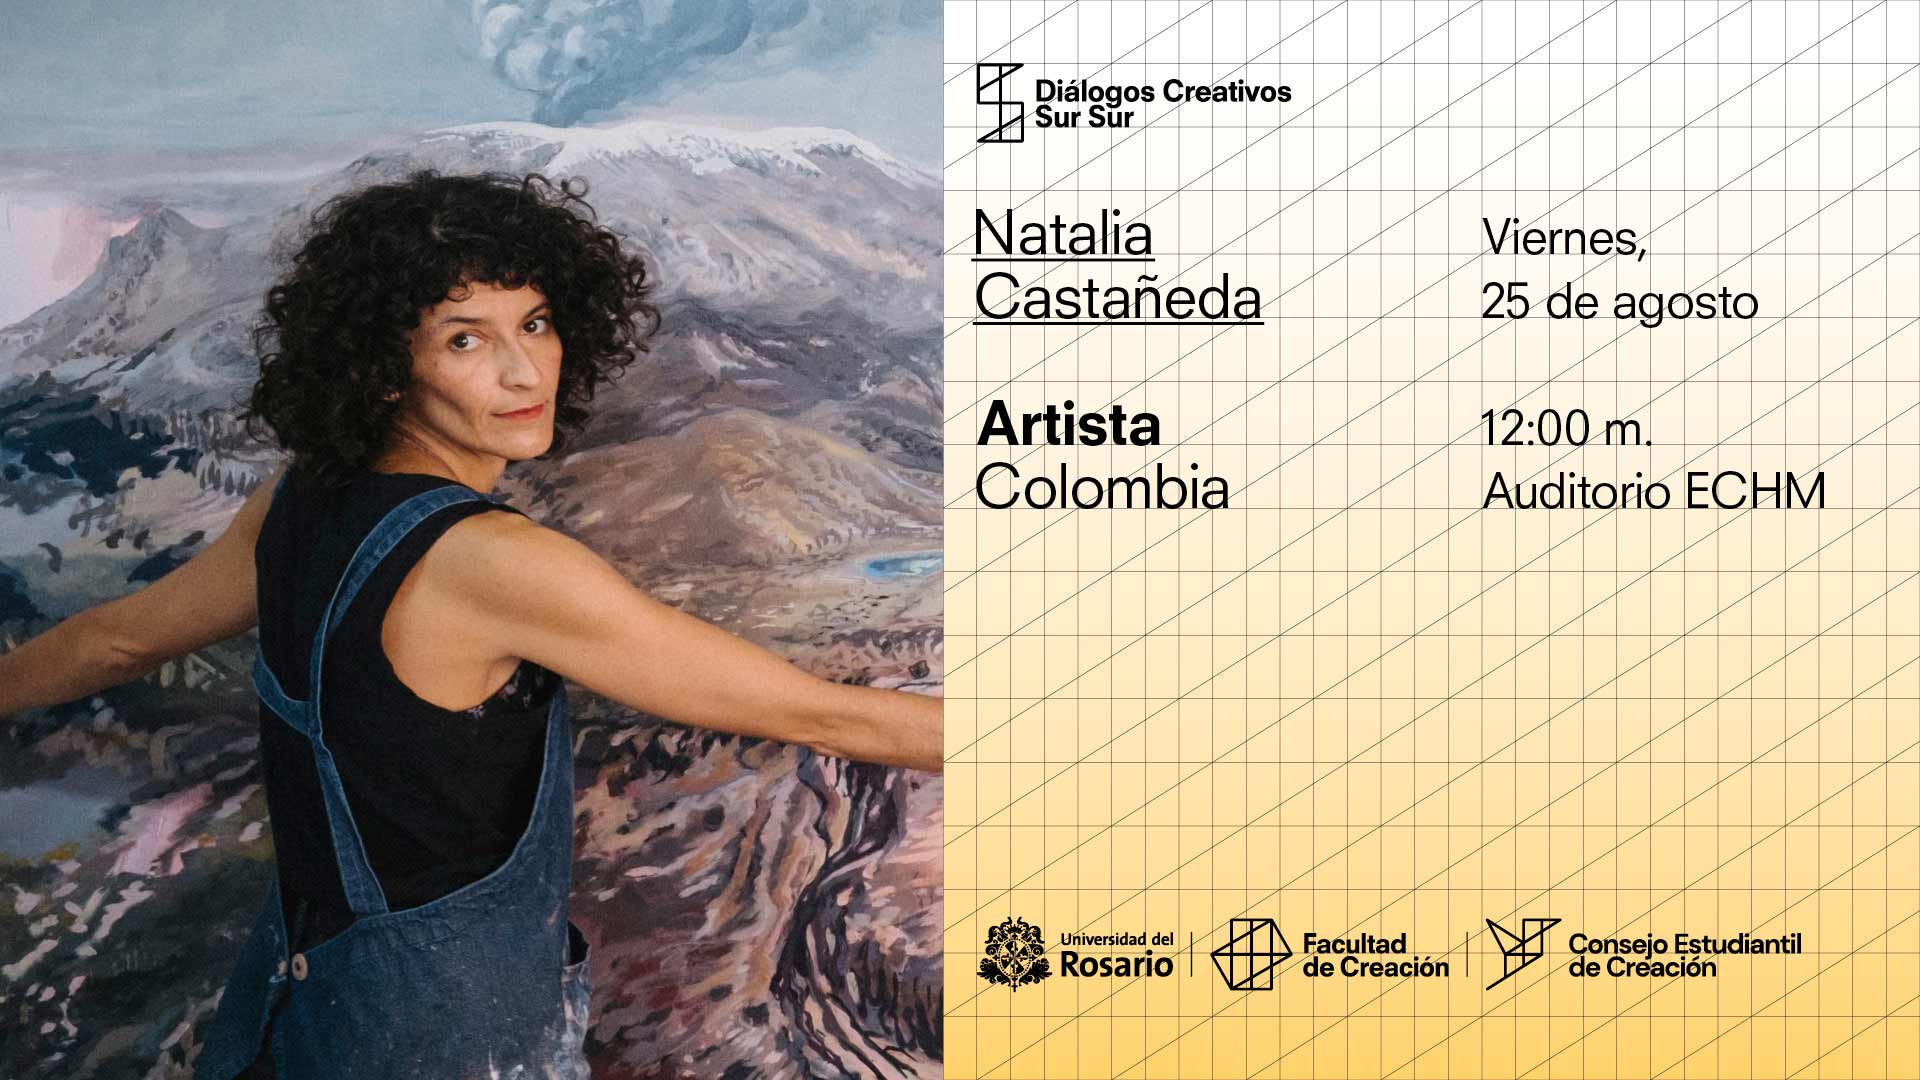 Diálogos Creativos Sur Sur: Natalia Castañeda, Colombia